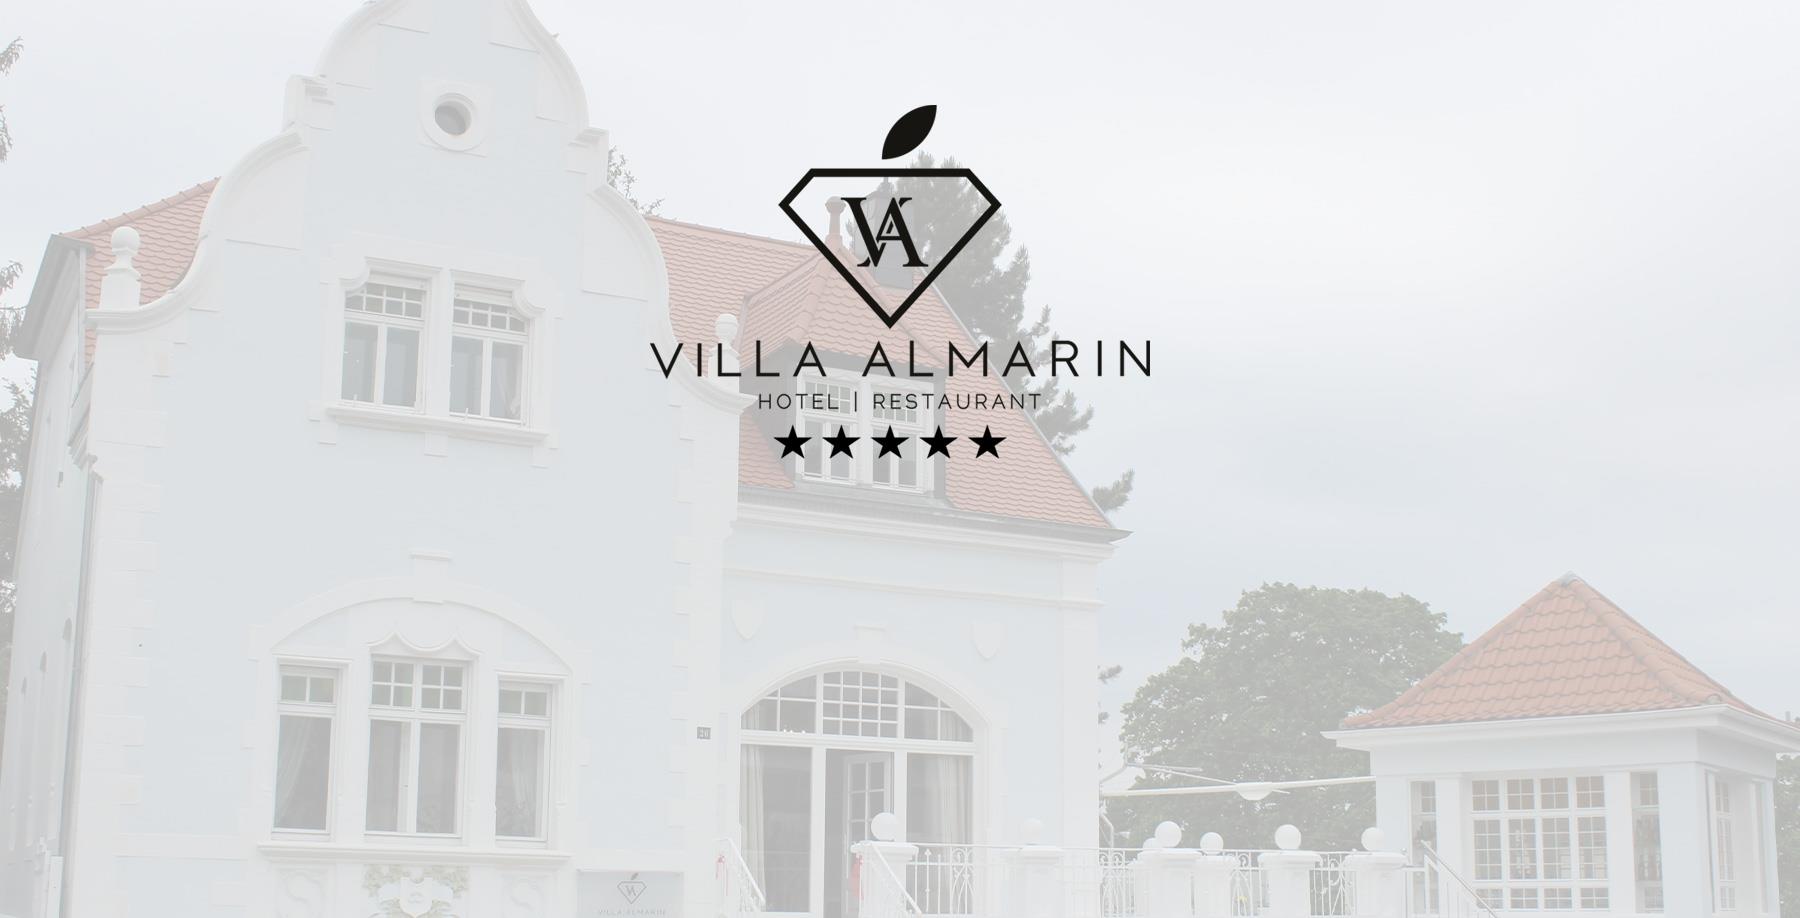 阿尔玛琳别墅 (Villa Almarin Hotel) - 圣英伯特 - 德国 - 1